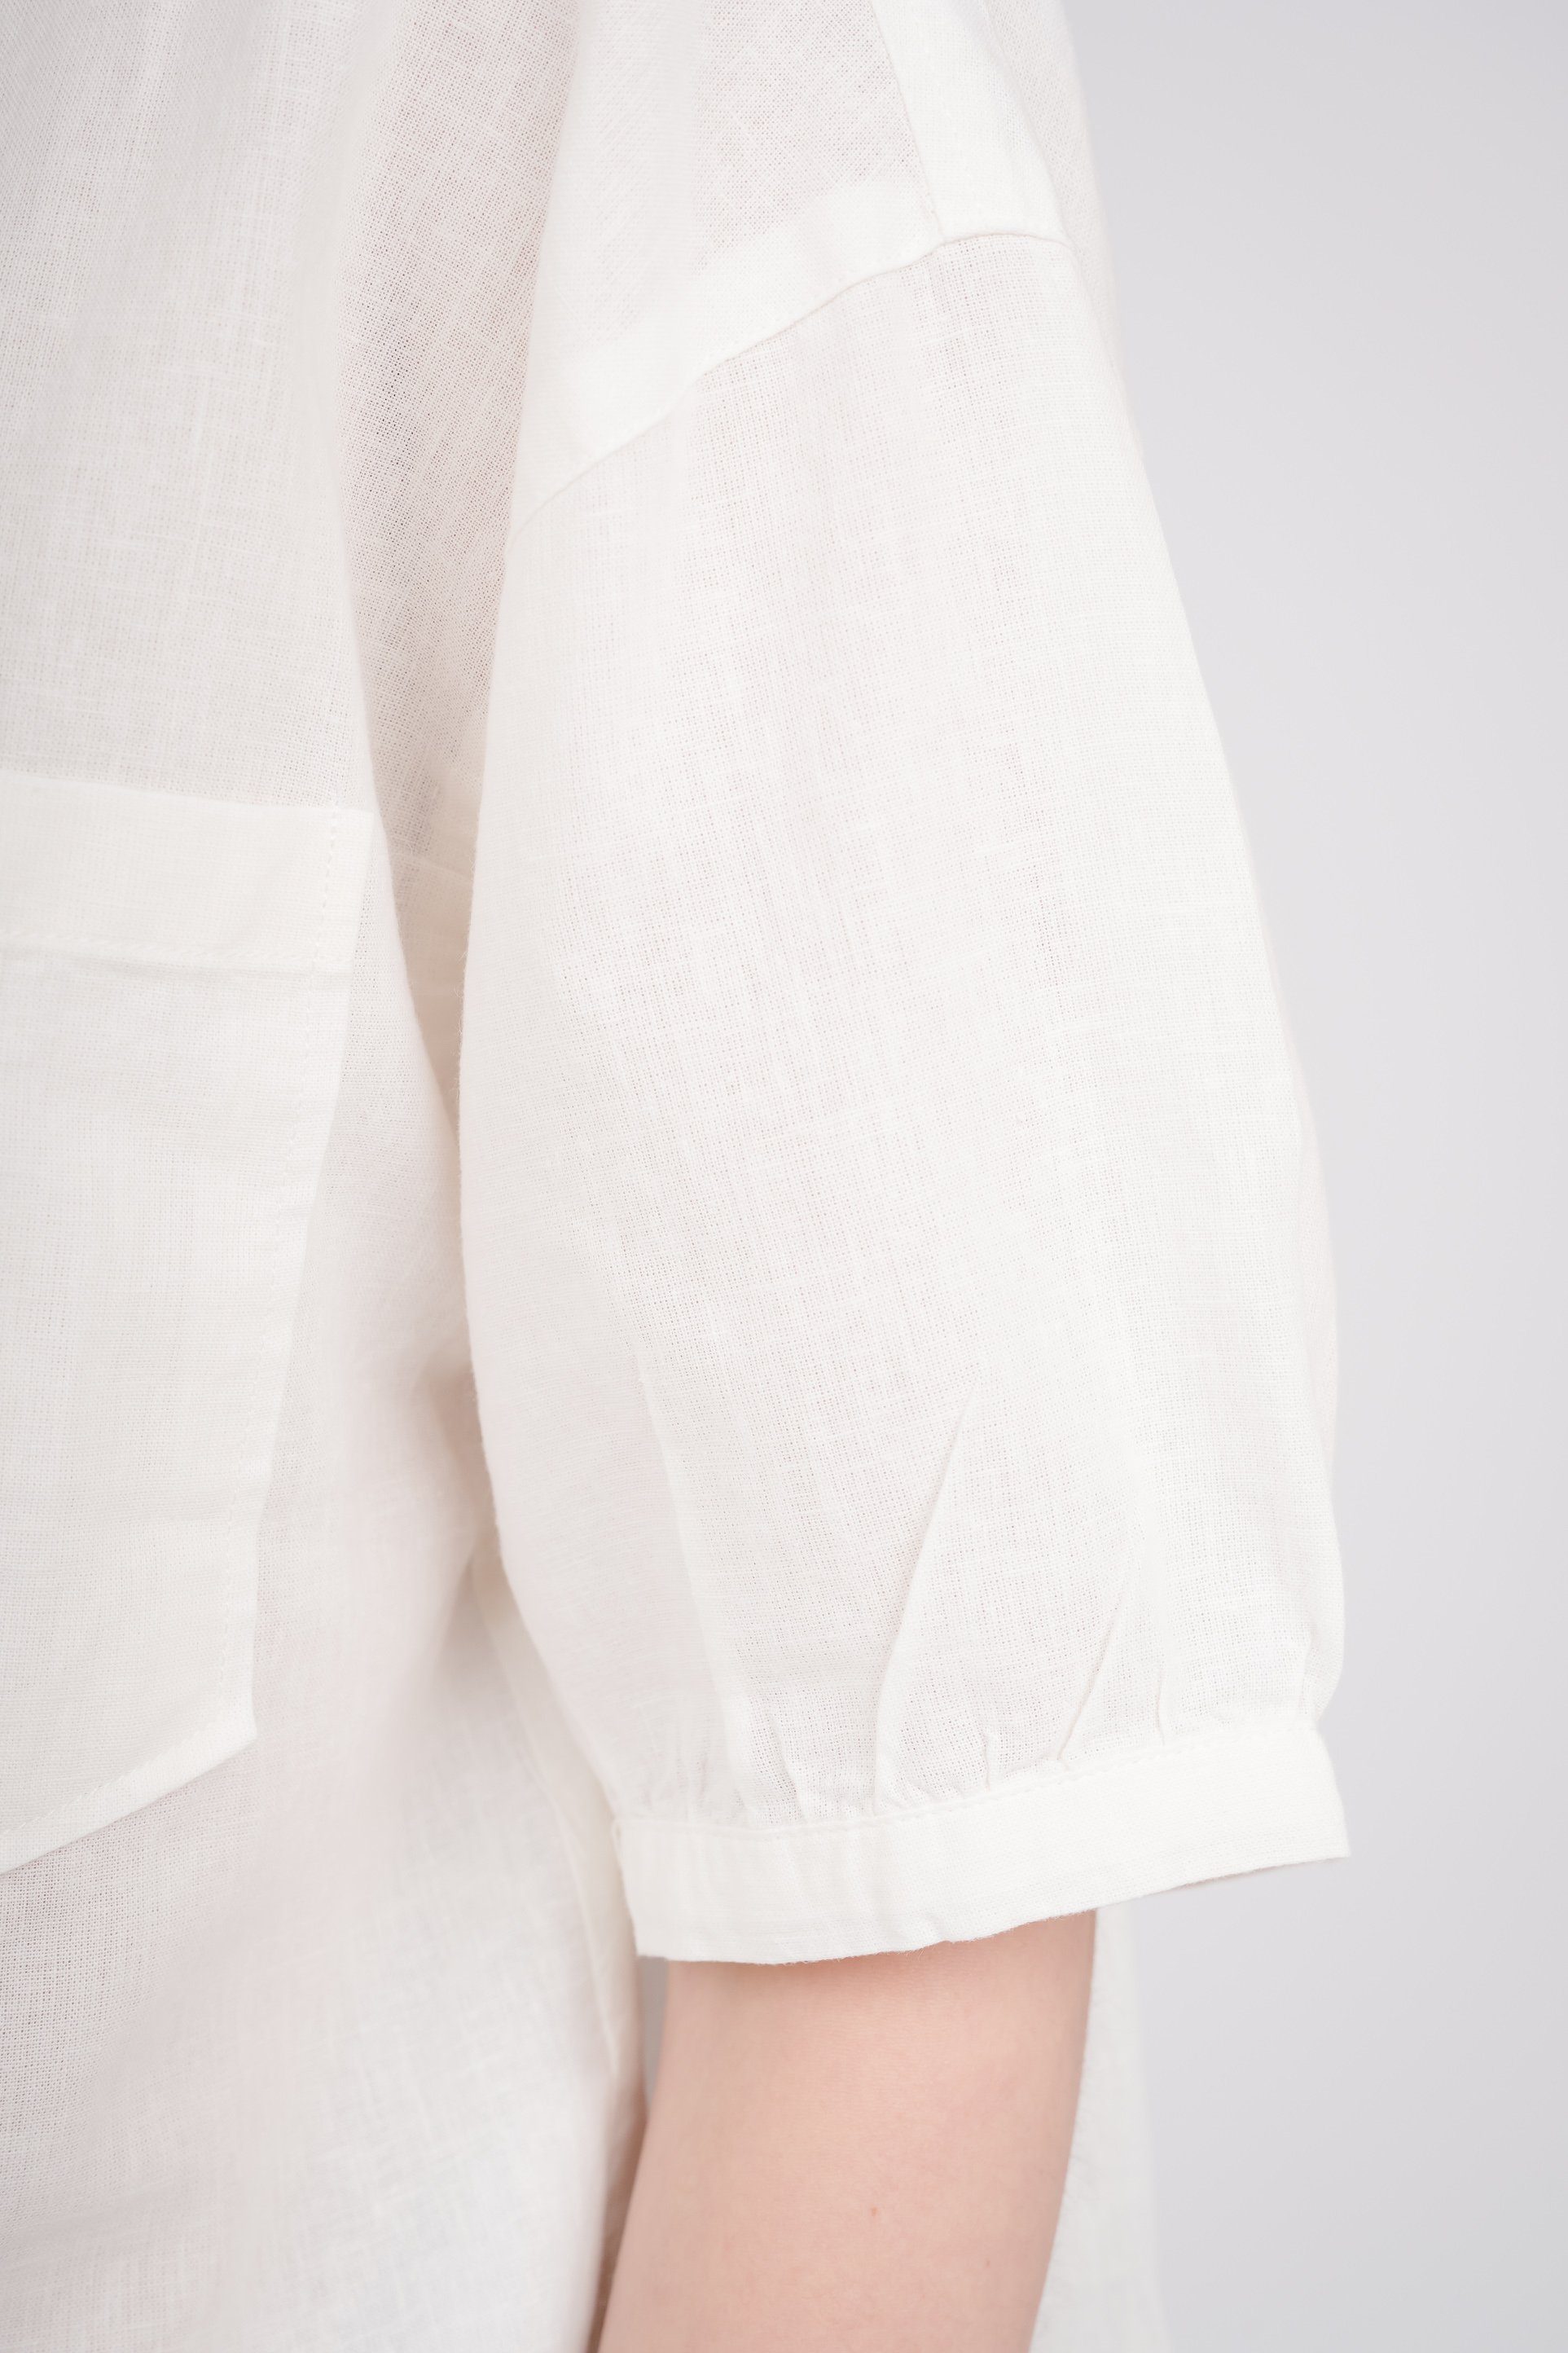 GIORDANO Klassische Bluse weiß schicken mit Puffärmeln